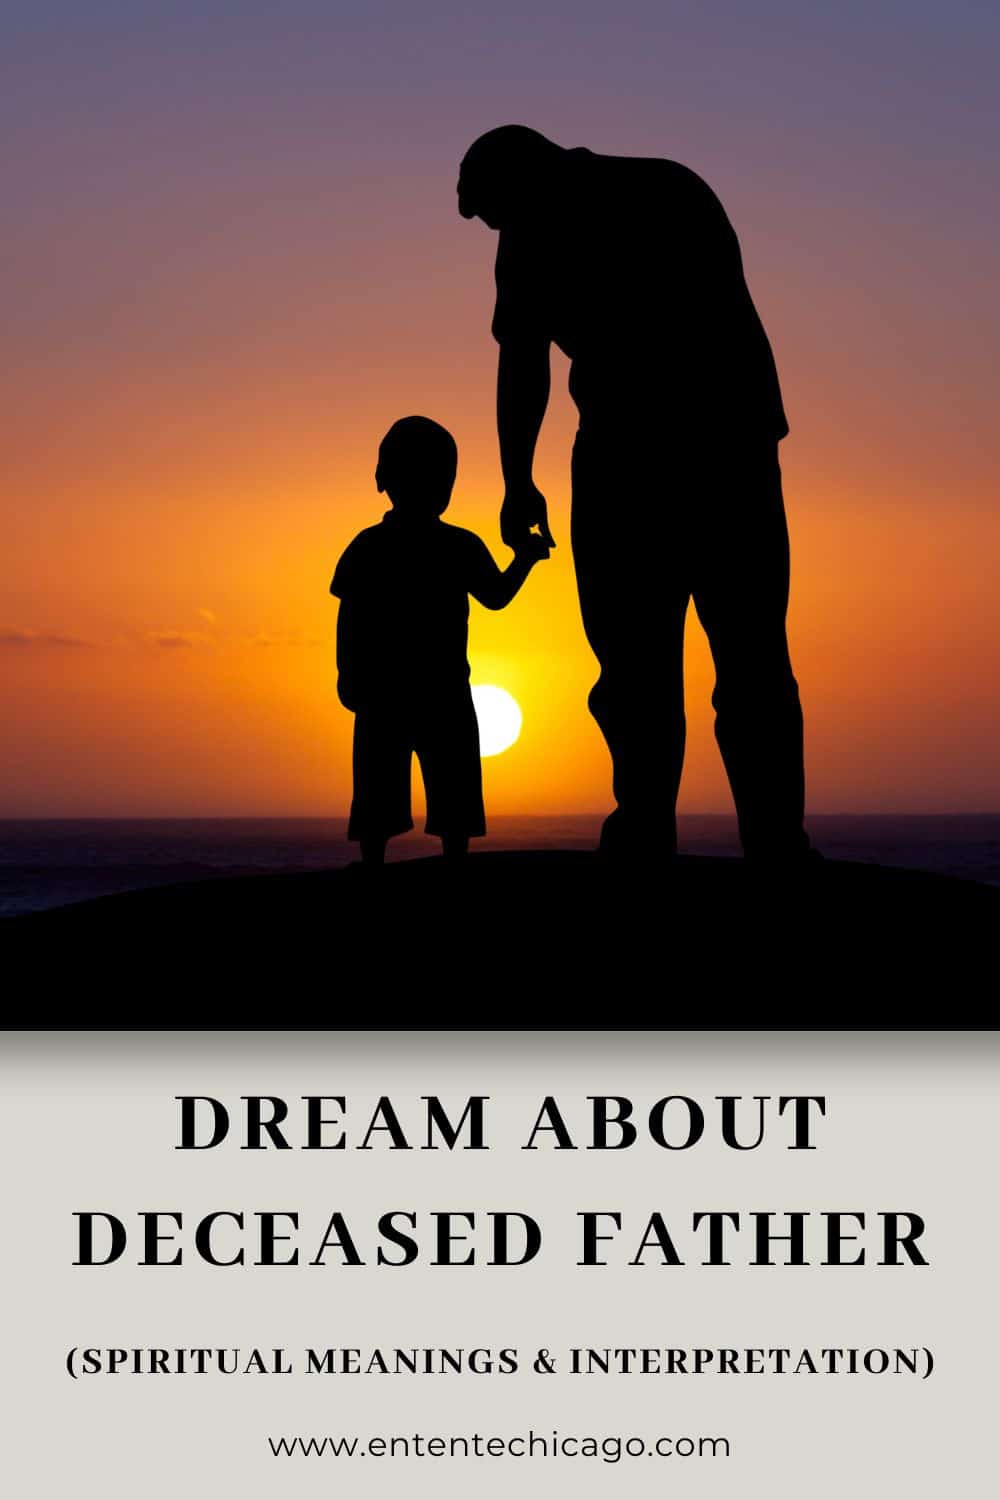  Unelma isän kanssa puhumisesta (Fortunate Interpretation)